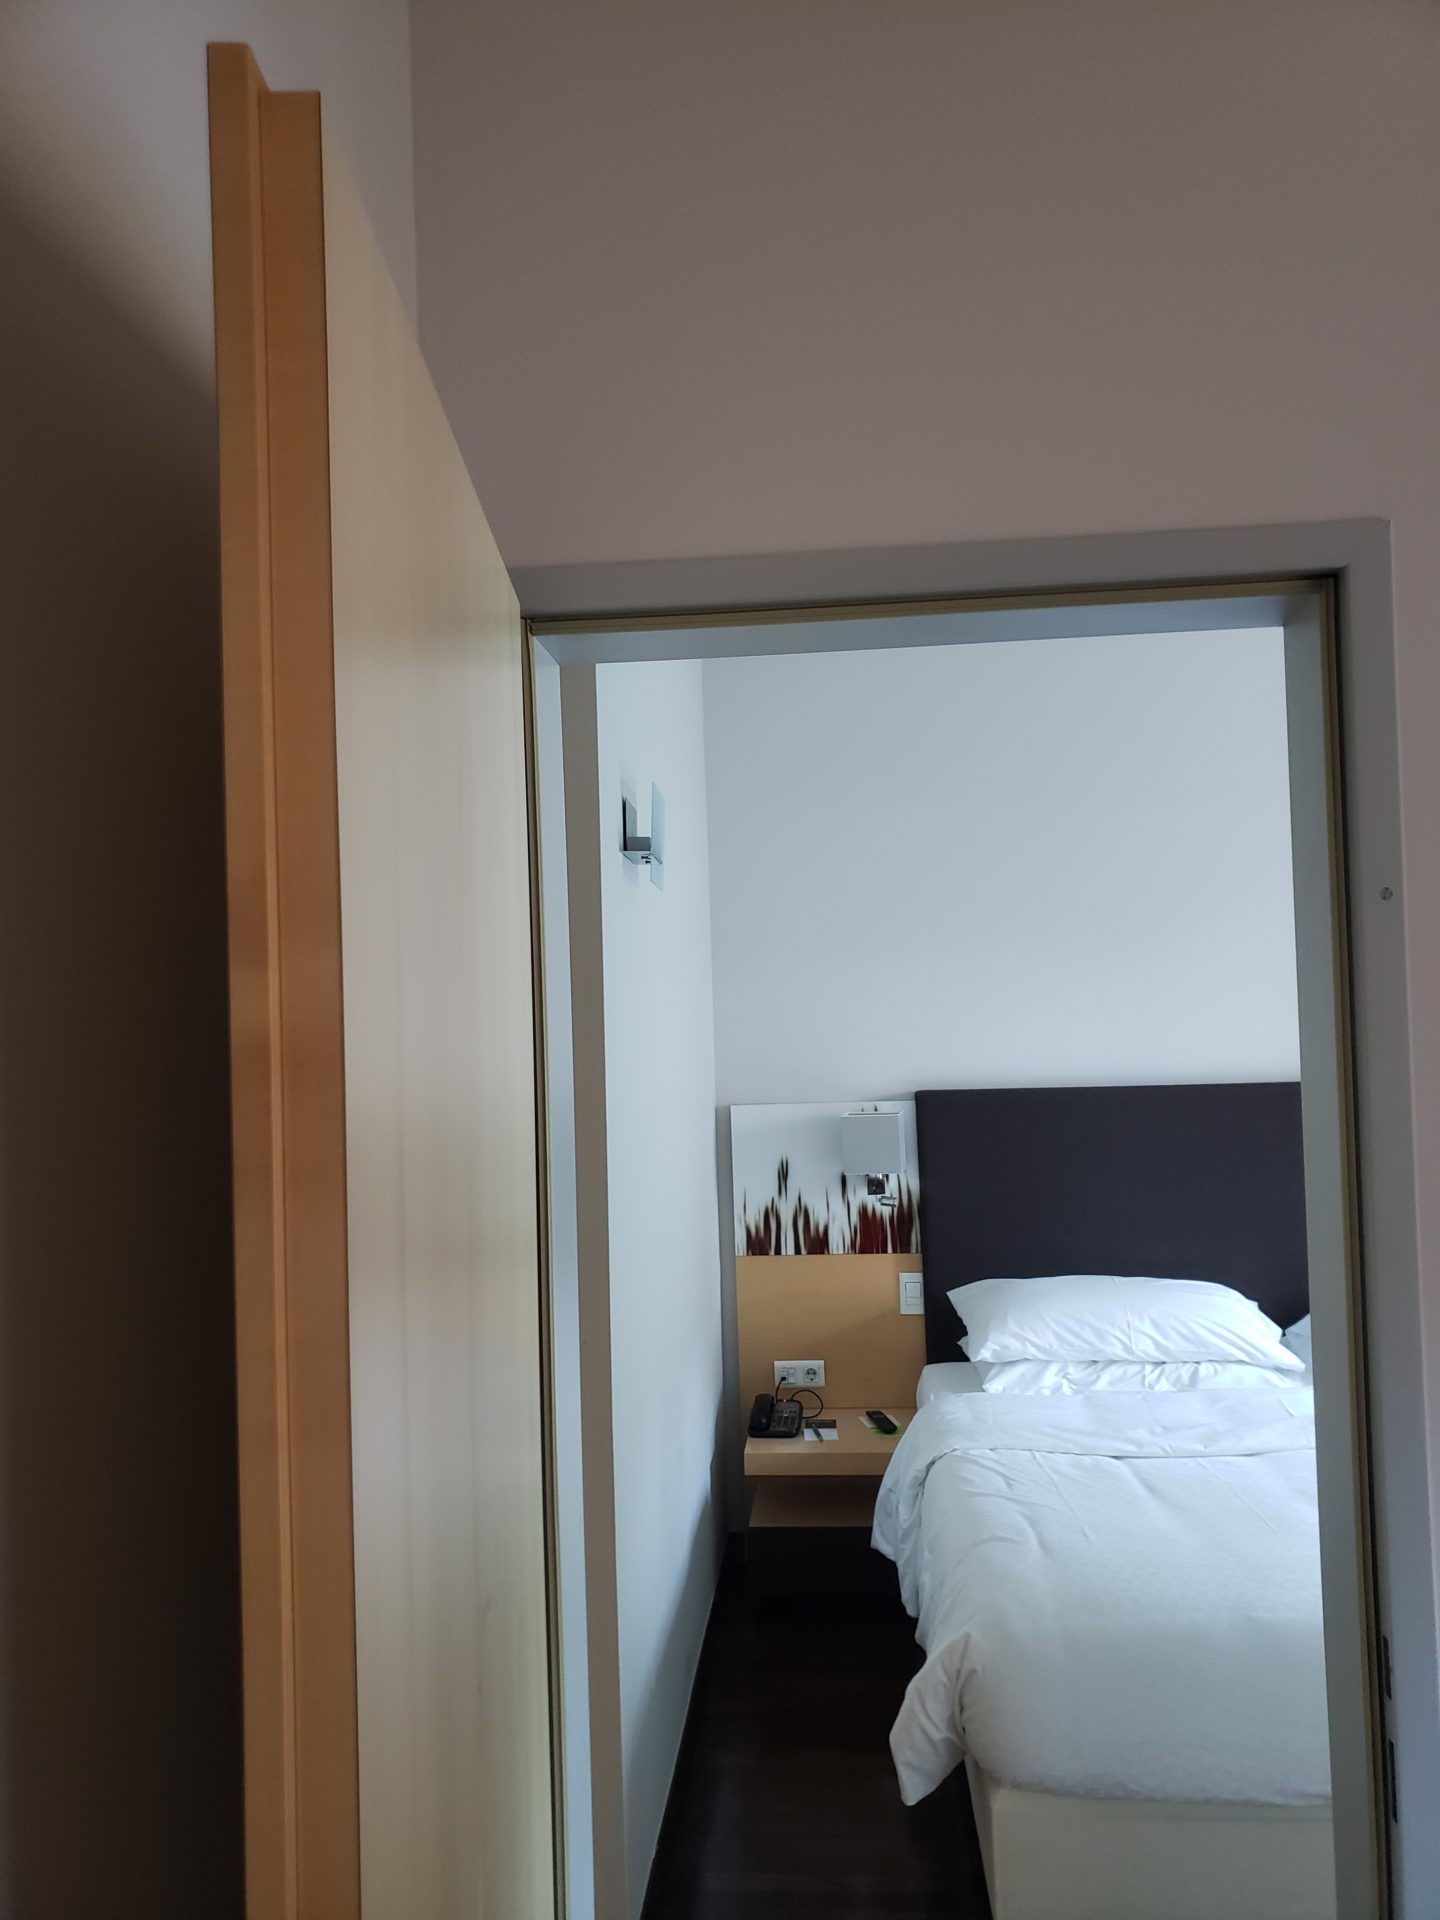 a door open to a bed